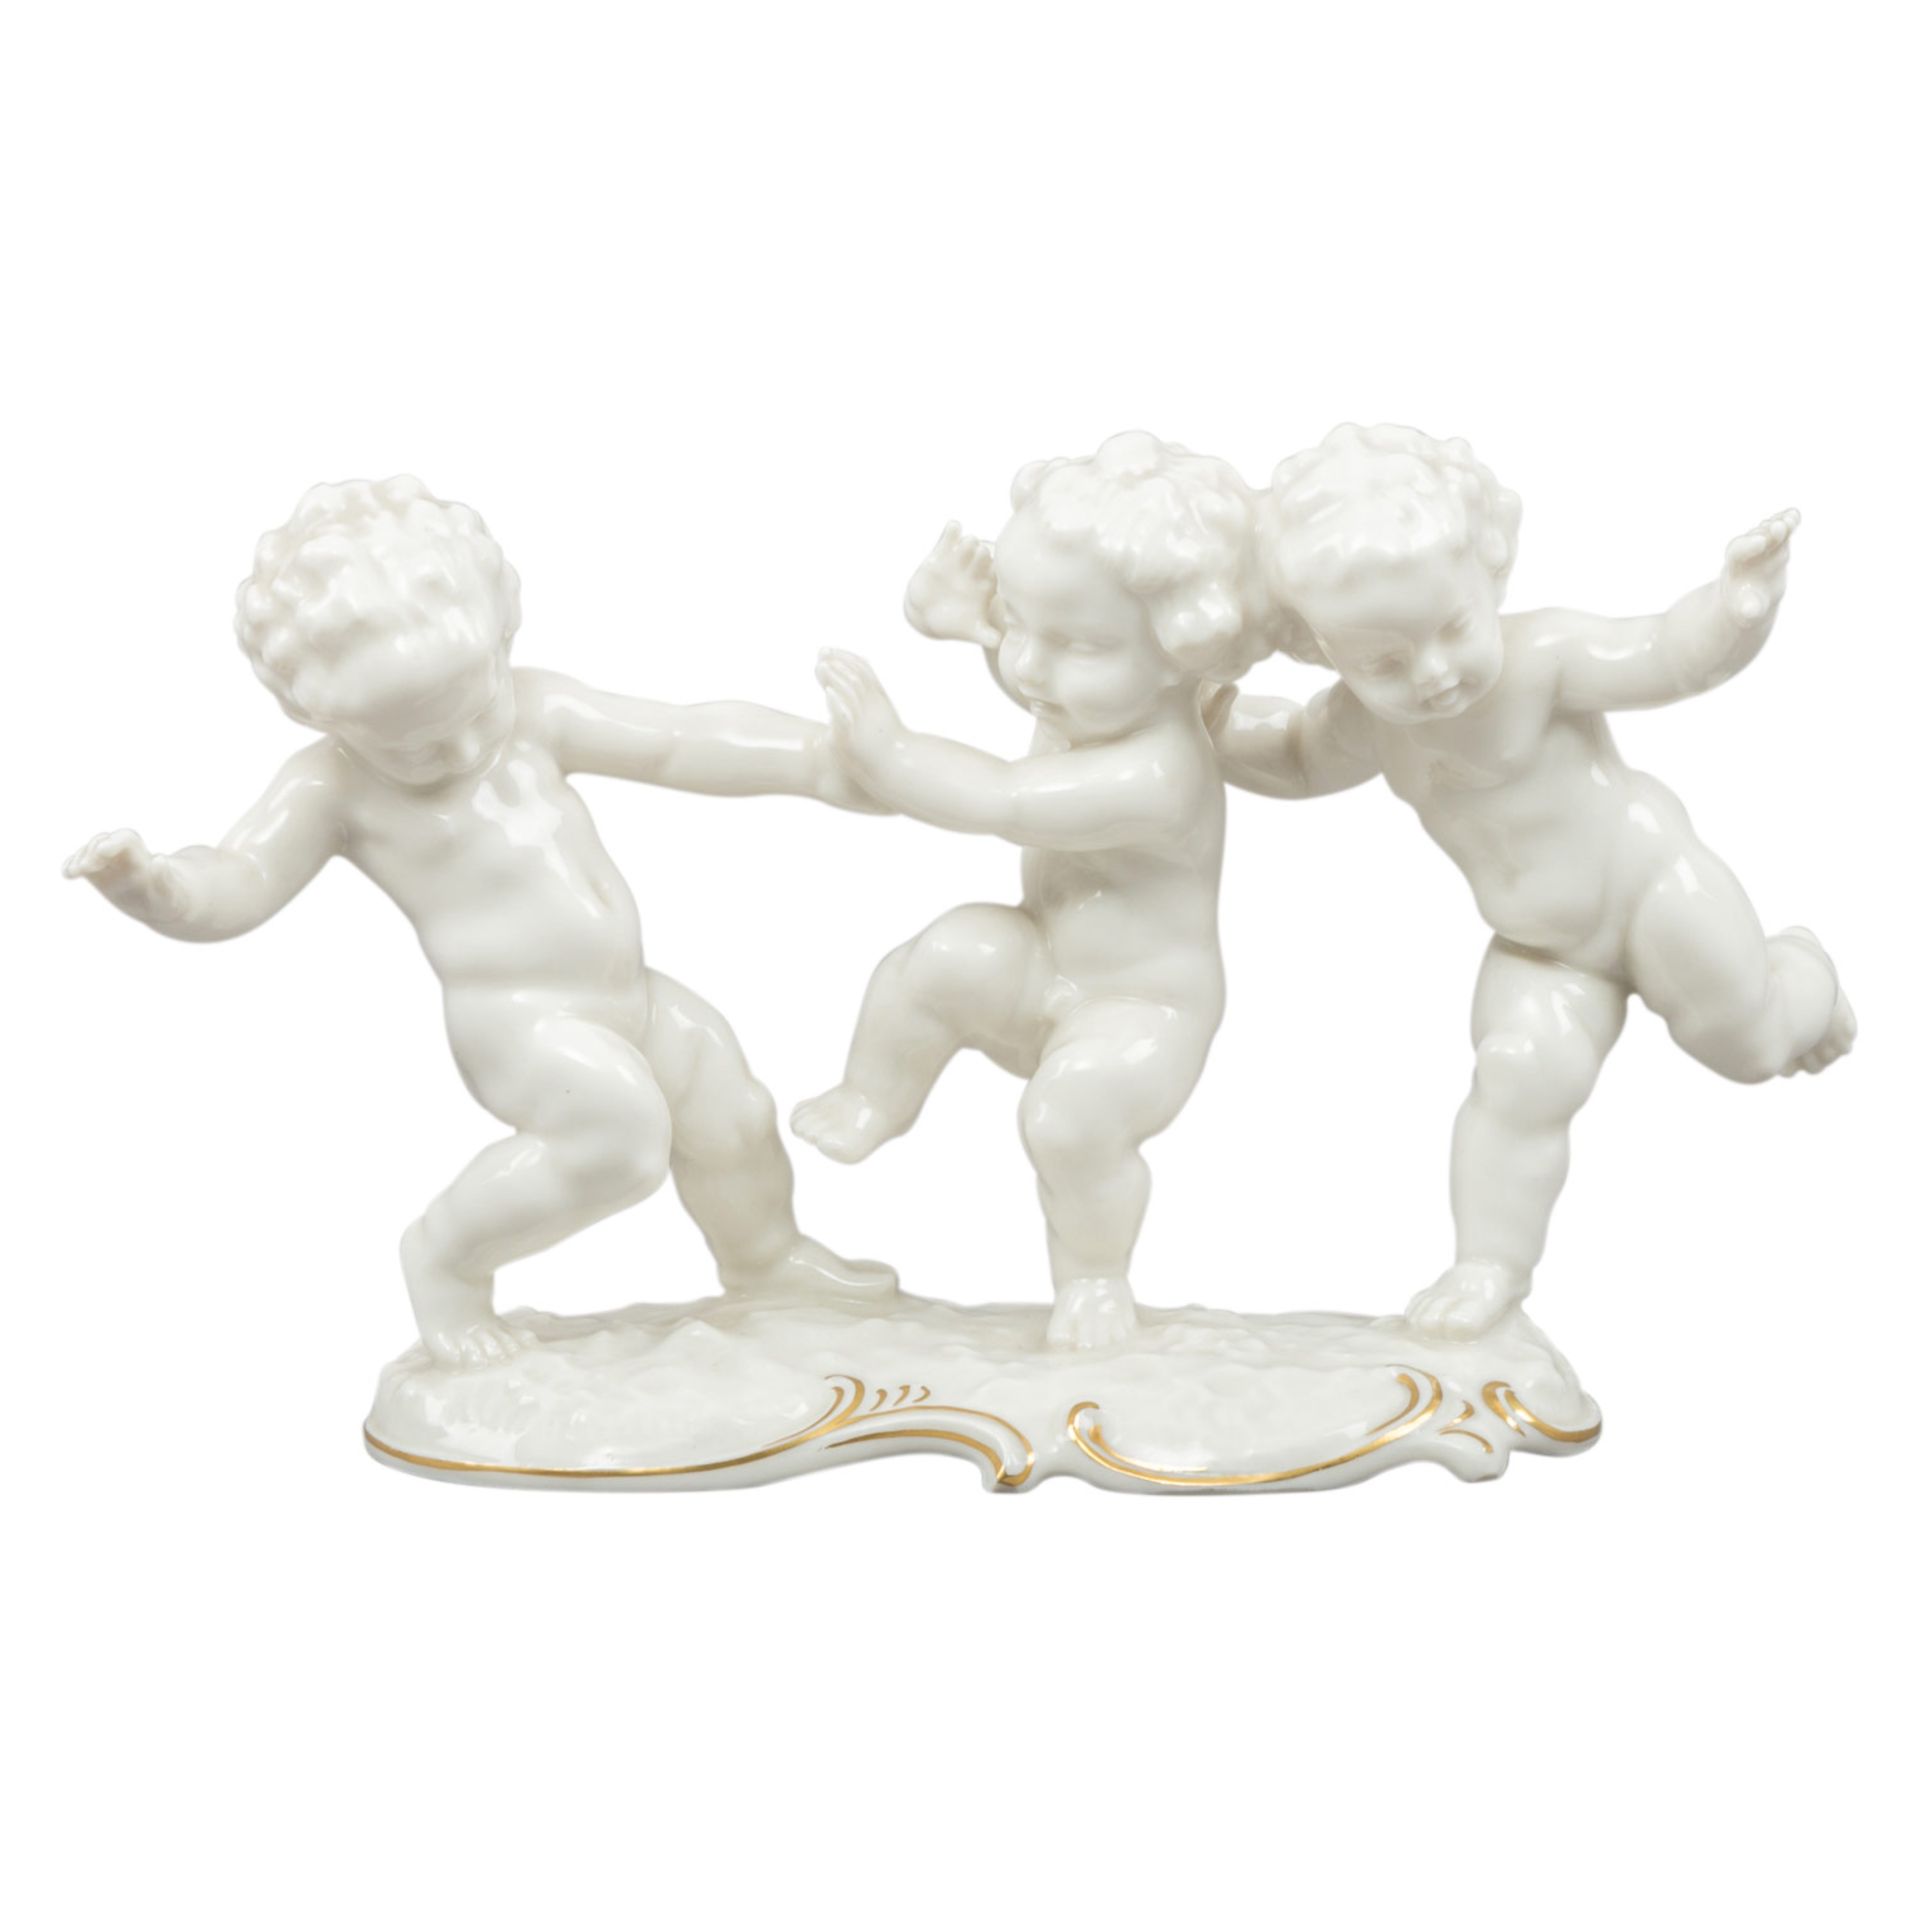 HUTSCHENREUTHER Figurengruppe '3 spielende Kinder', Marke von 1955-1968. Weißporzellan partiell